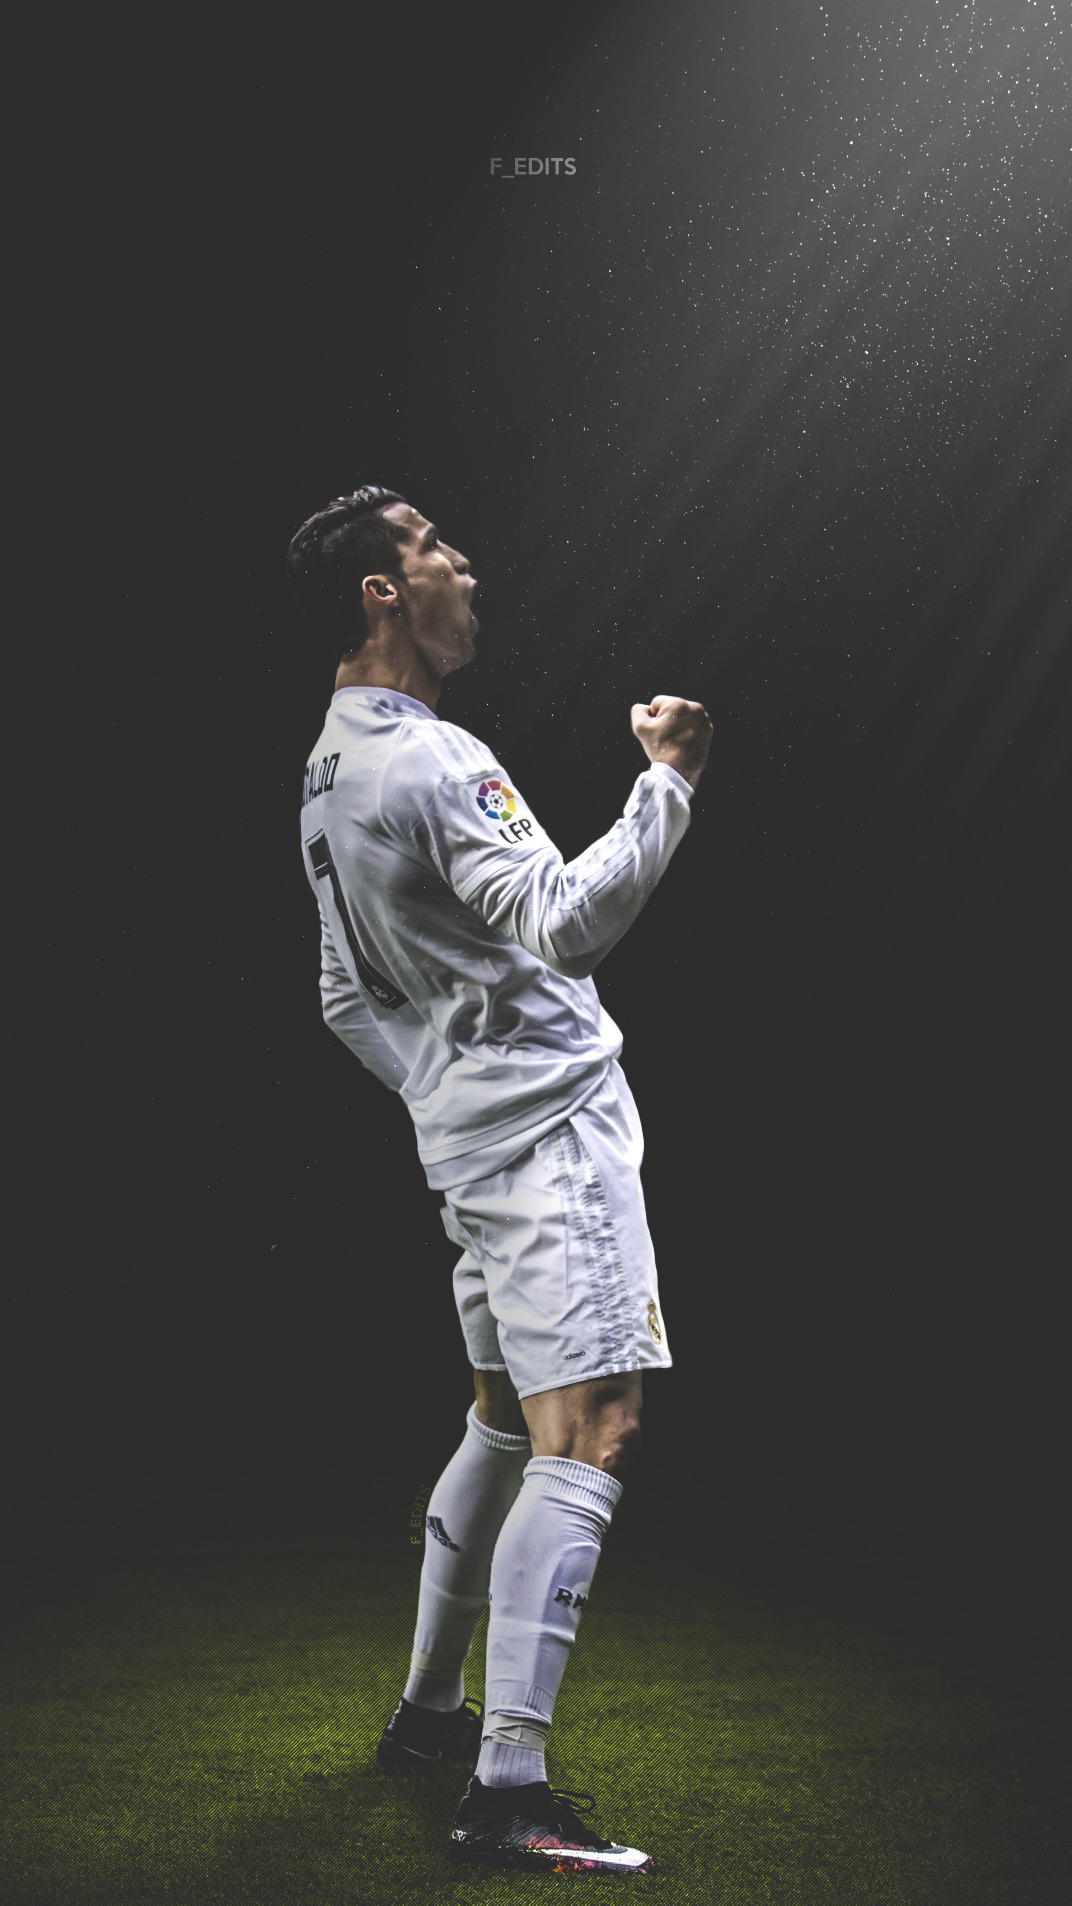 F_EDITS — f-edits: Cristiano Ronaldo iPhone wallpaper